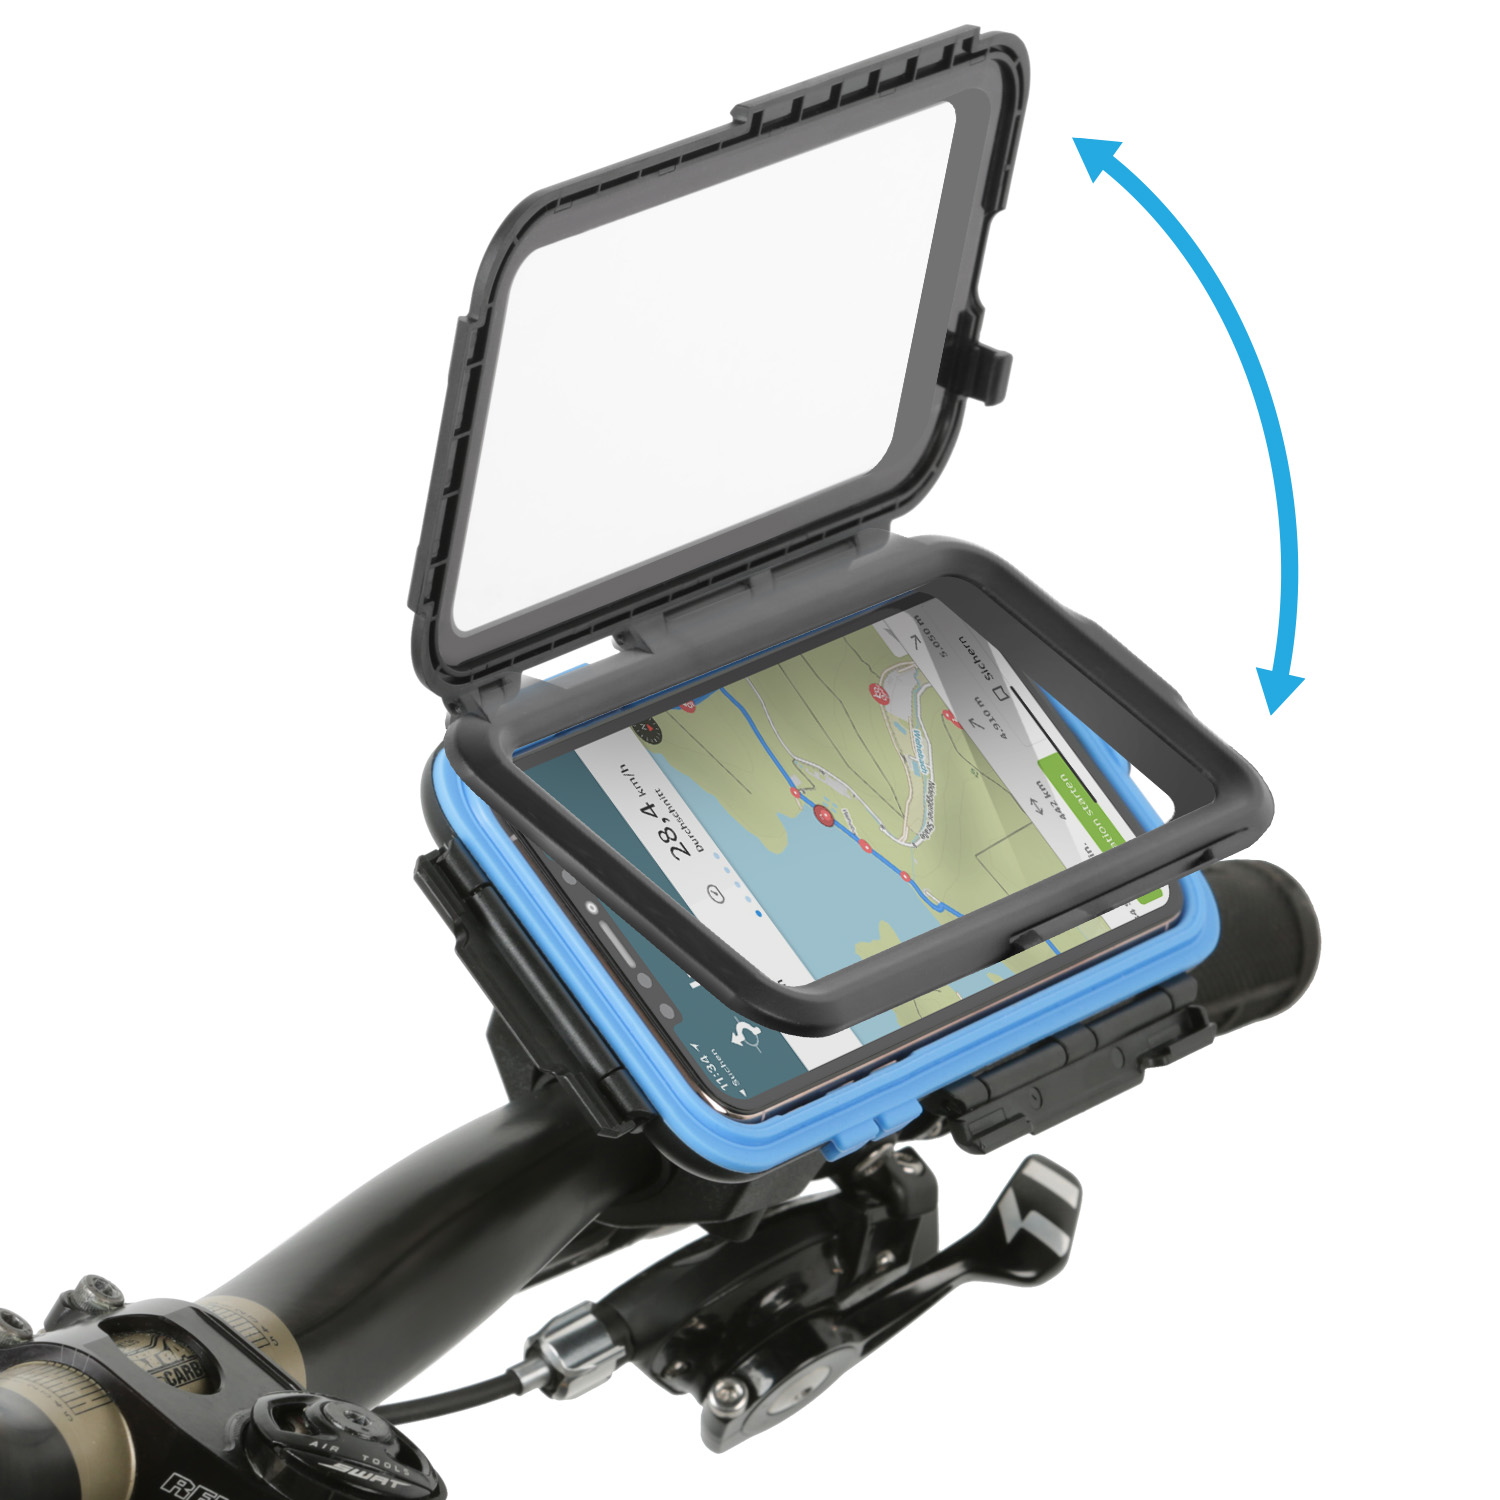 Apple schwarz Fahrradhalterung iPhone Case Fahrrad Tour CHILI für WICKED wasserdichte Halterung, / Handy Motorrad 11